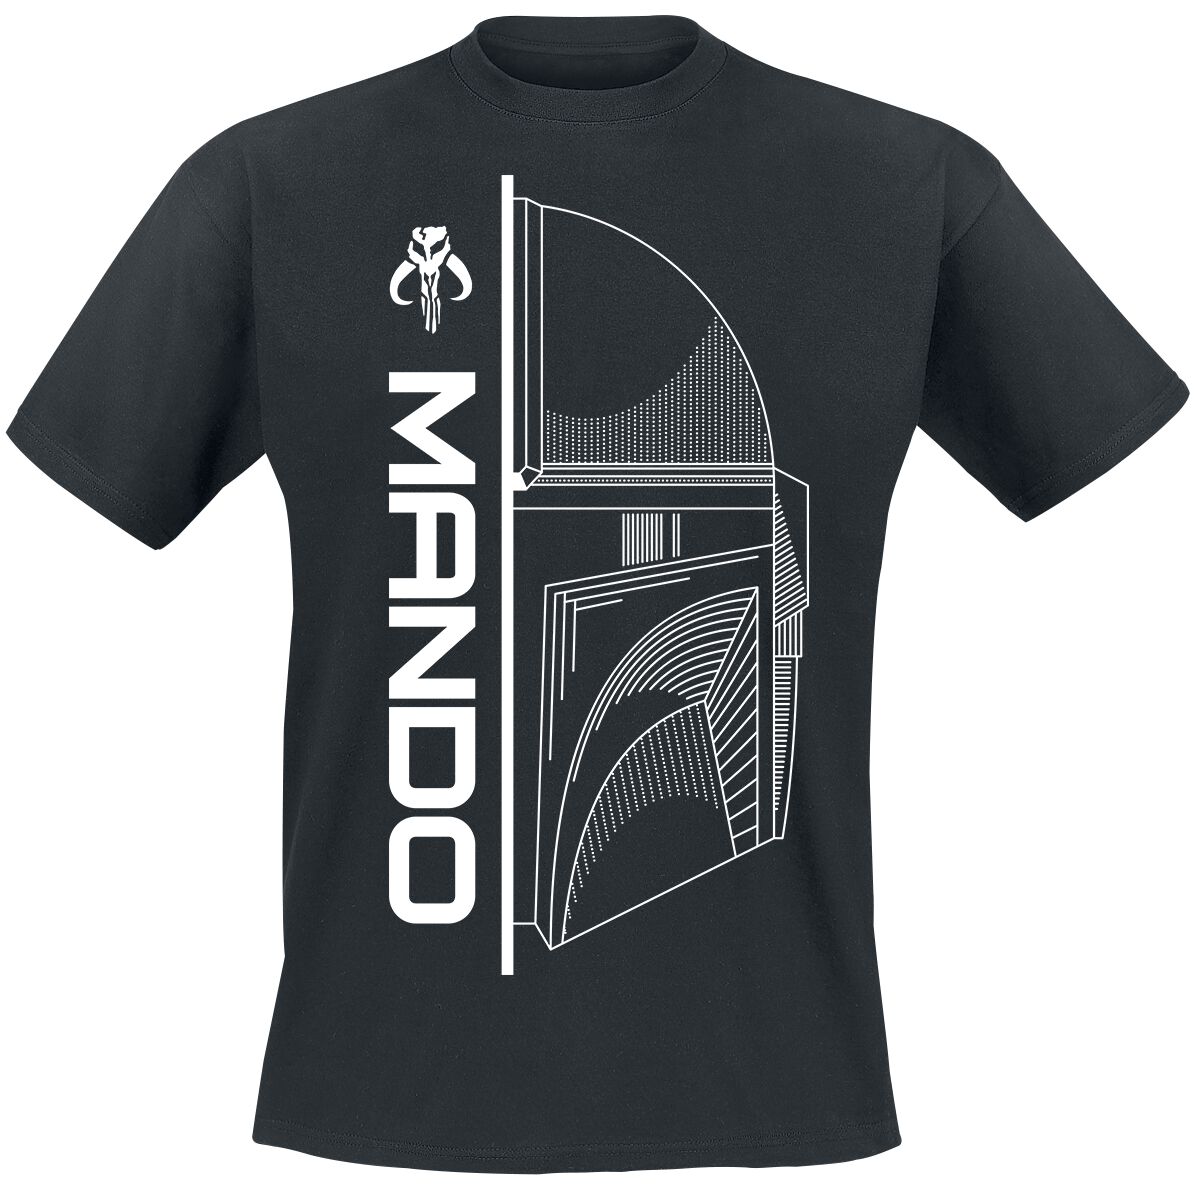 Star Wars T-Shirt - The Mandalorian - Mando - S bis XXL - für Männer - Größe XXL - schwarz  - EMP exklusives Merchandise!